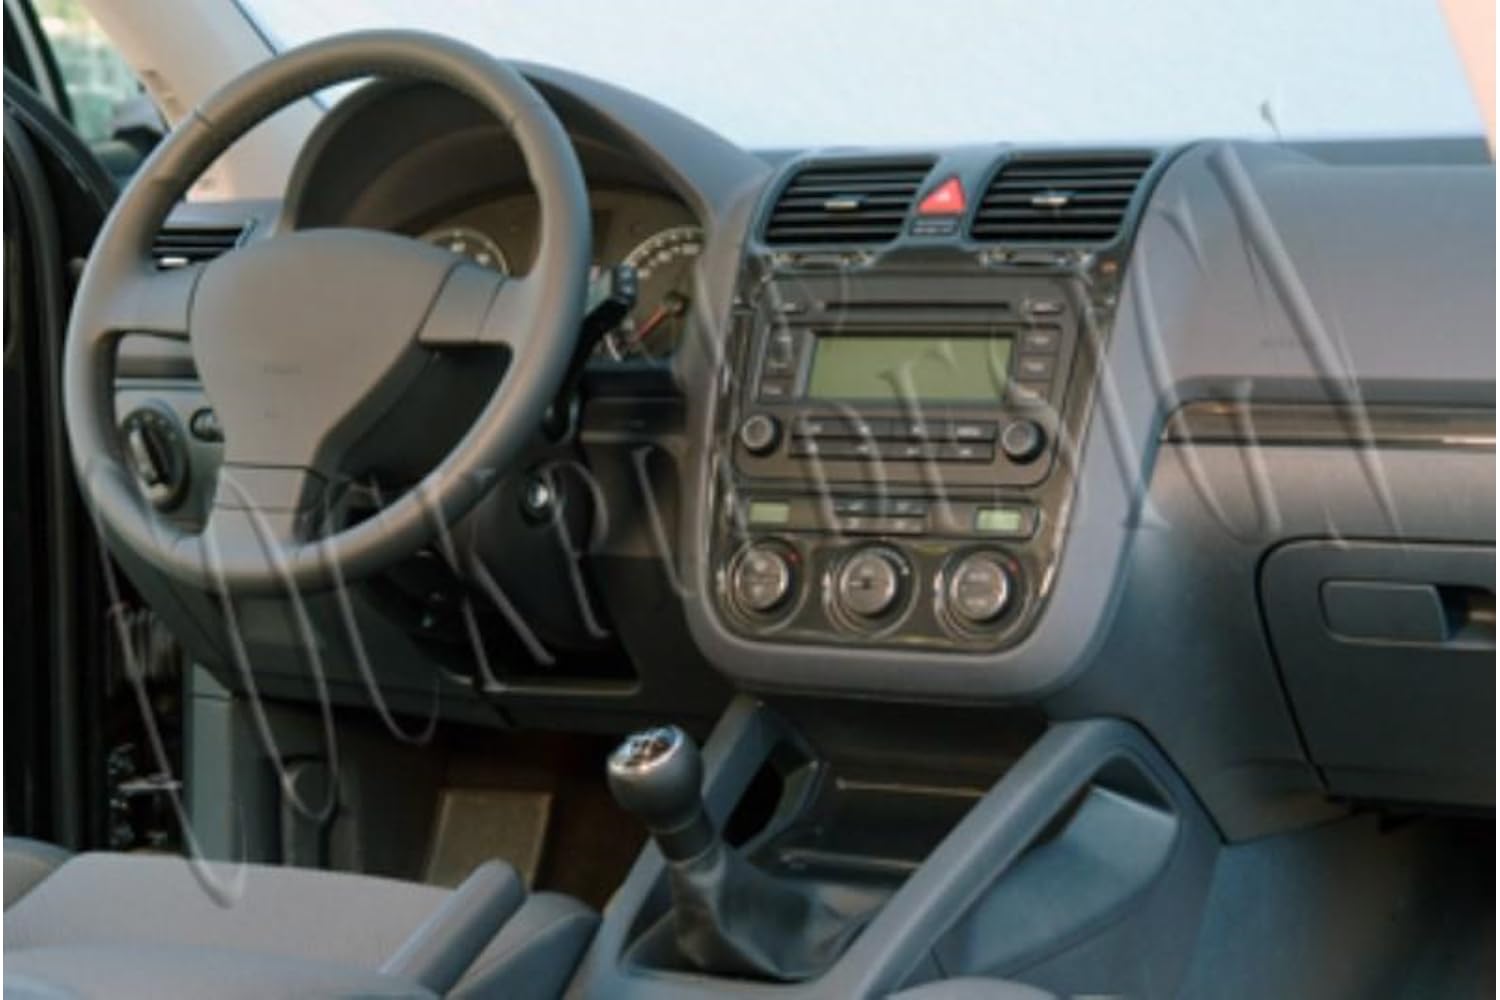 AUTOKLEIDUNG® Cockpit Dekor kompatibel mit Volkswagen Golf V Plus ab Baujahr 12/2004 16 Teile | 3D Wurzelholz Optik von Autokleidung